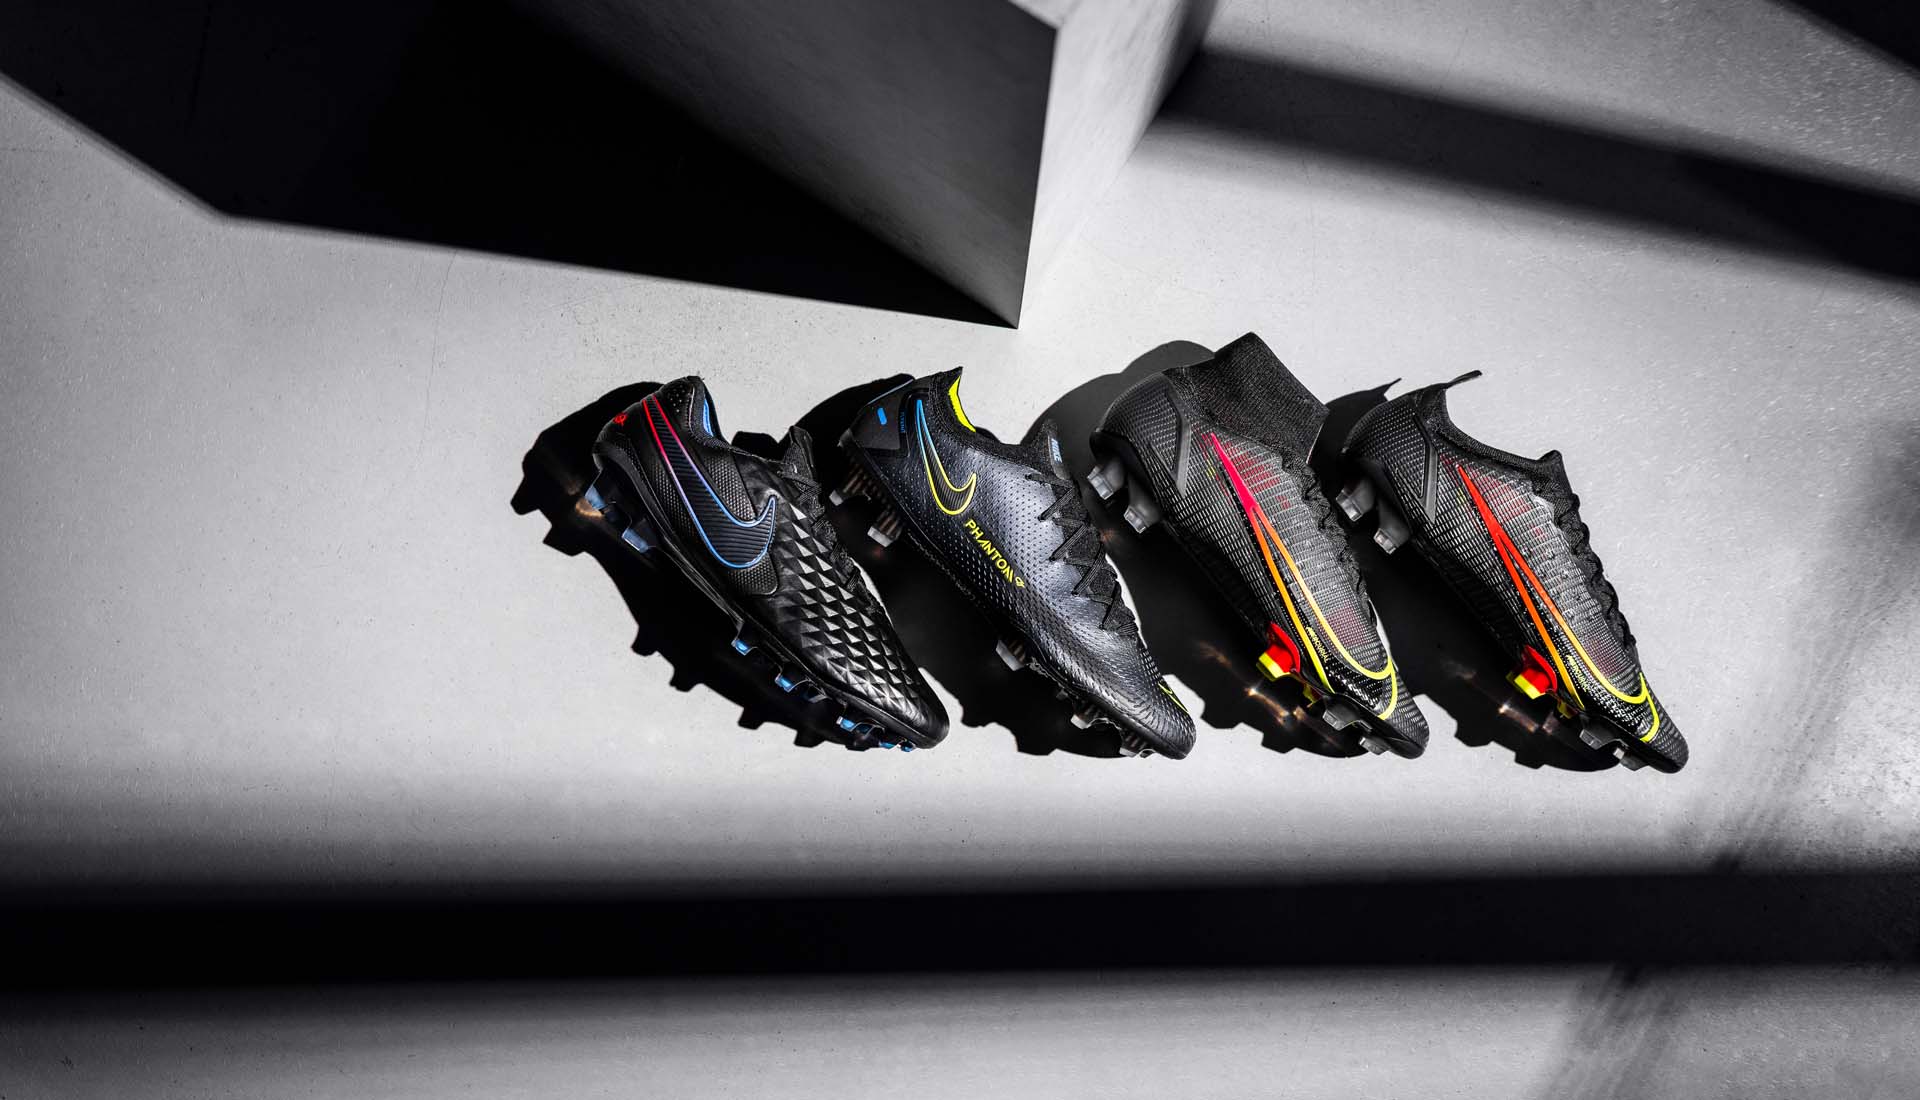 Nike ra mắt 2 phiên bản Mercurial, chính thức hoàn chỉnh bộ sưu tập ‘Black x Prism’.